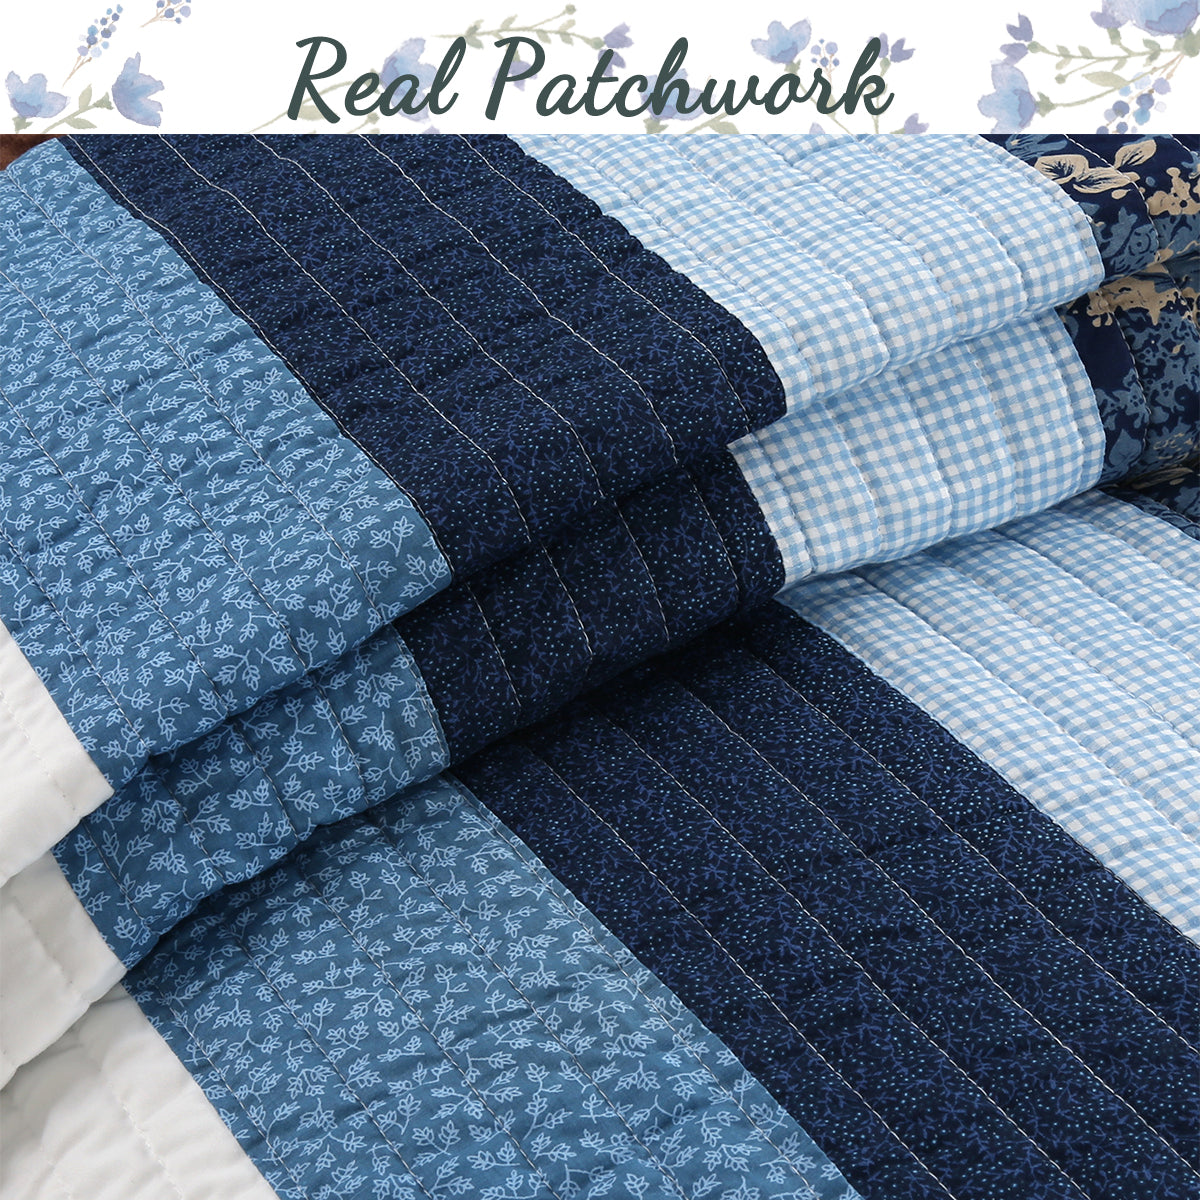 Petrey Blue Stripe Real Patchwork Cotton 3-Piece Reversible Quilt Bedding Set